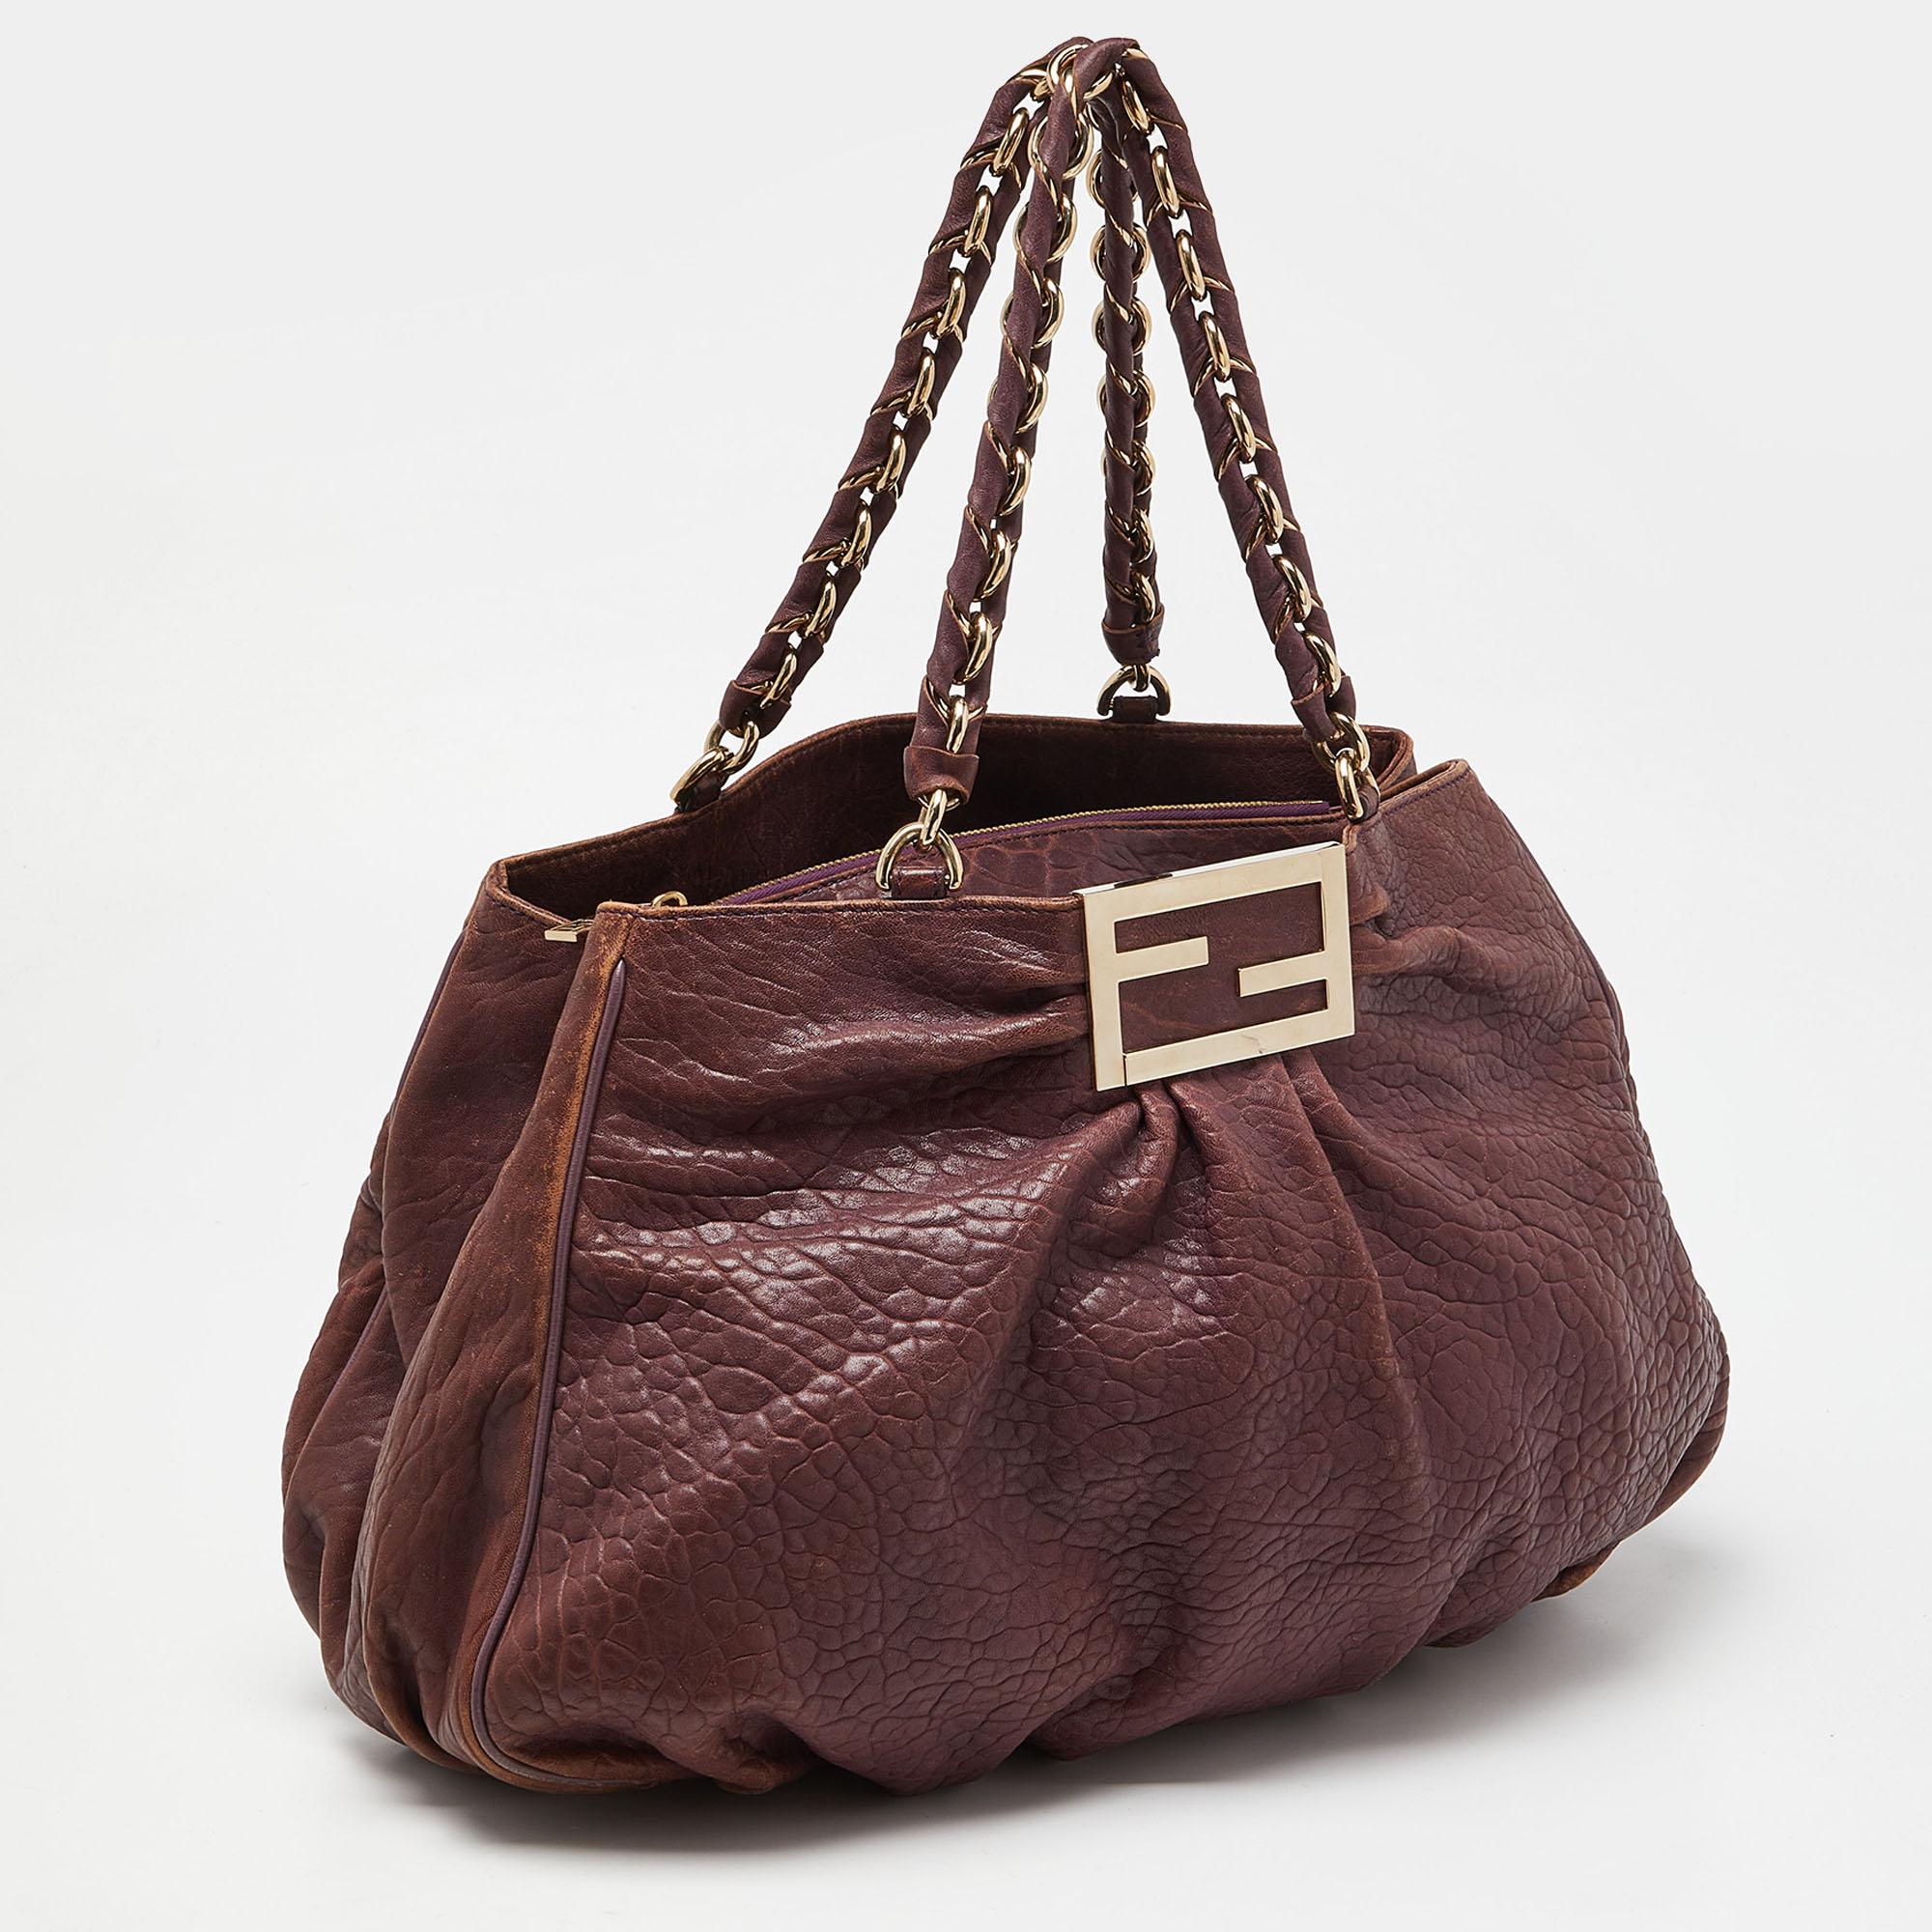 Fendi Purple Textured Leather Large Mia Hobo In Good Condition For Sale In Dubai, Al Qouz 2